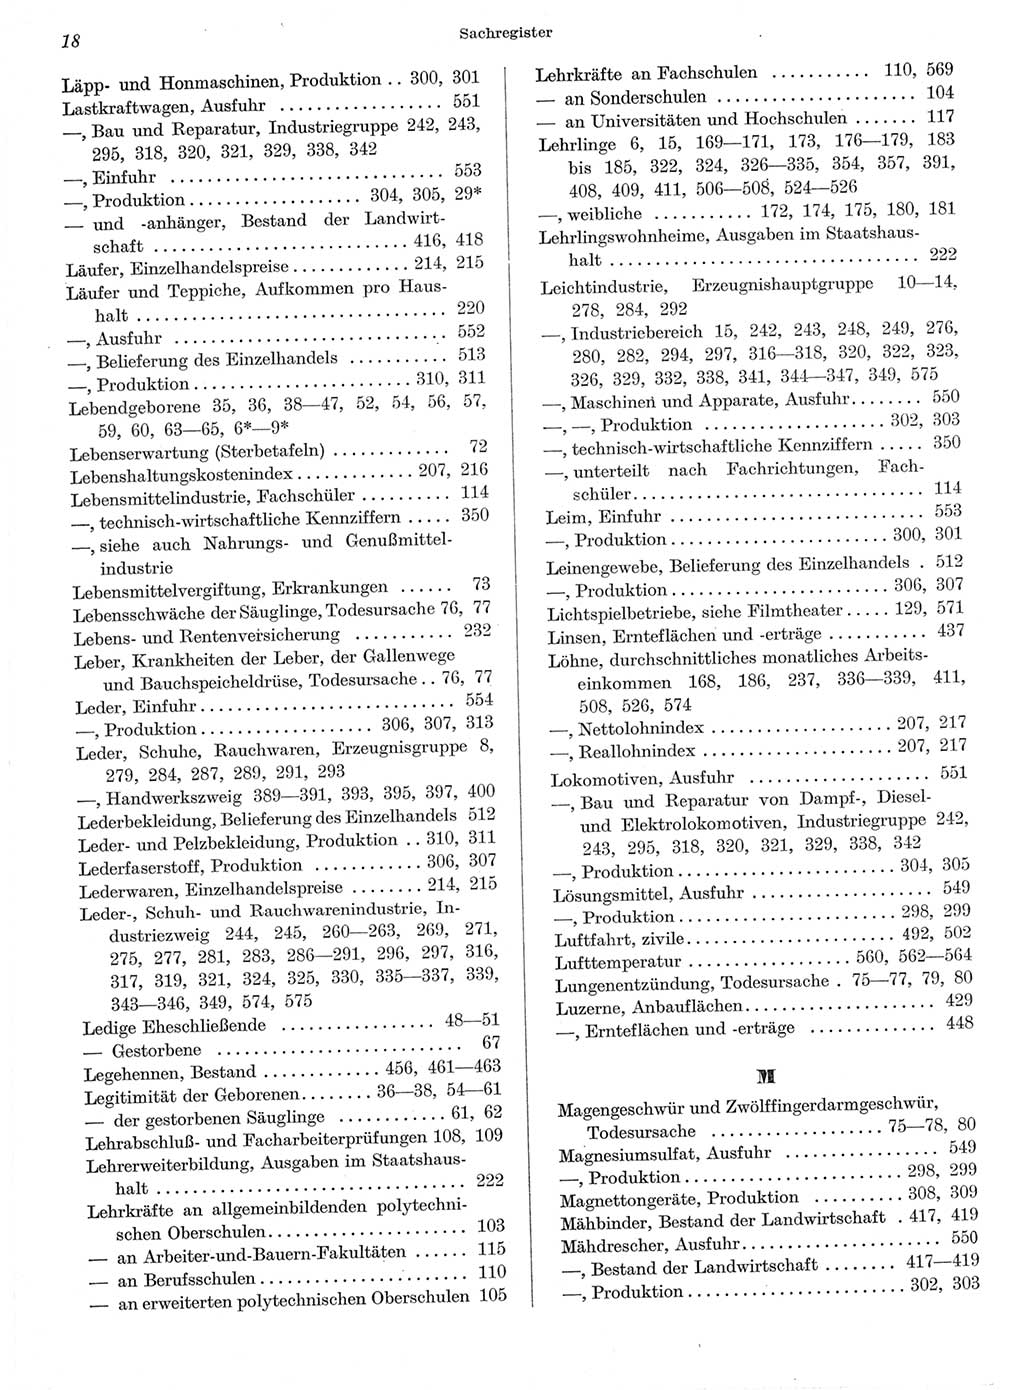 Statistisches Jahrbuch der Deutschen Demokratischen Republik (DDR) 1962, Seite 18 (Stat. Jb. DDR 1962, S. 18)